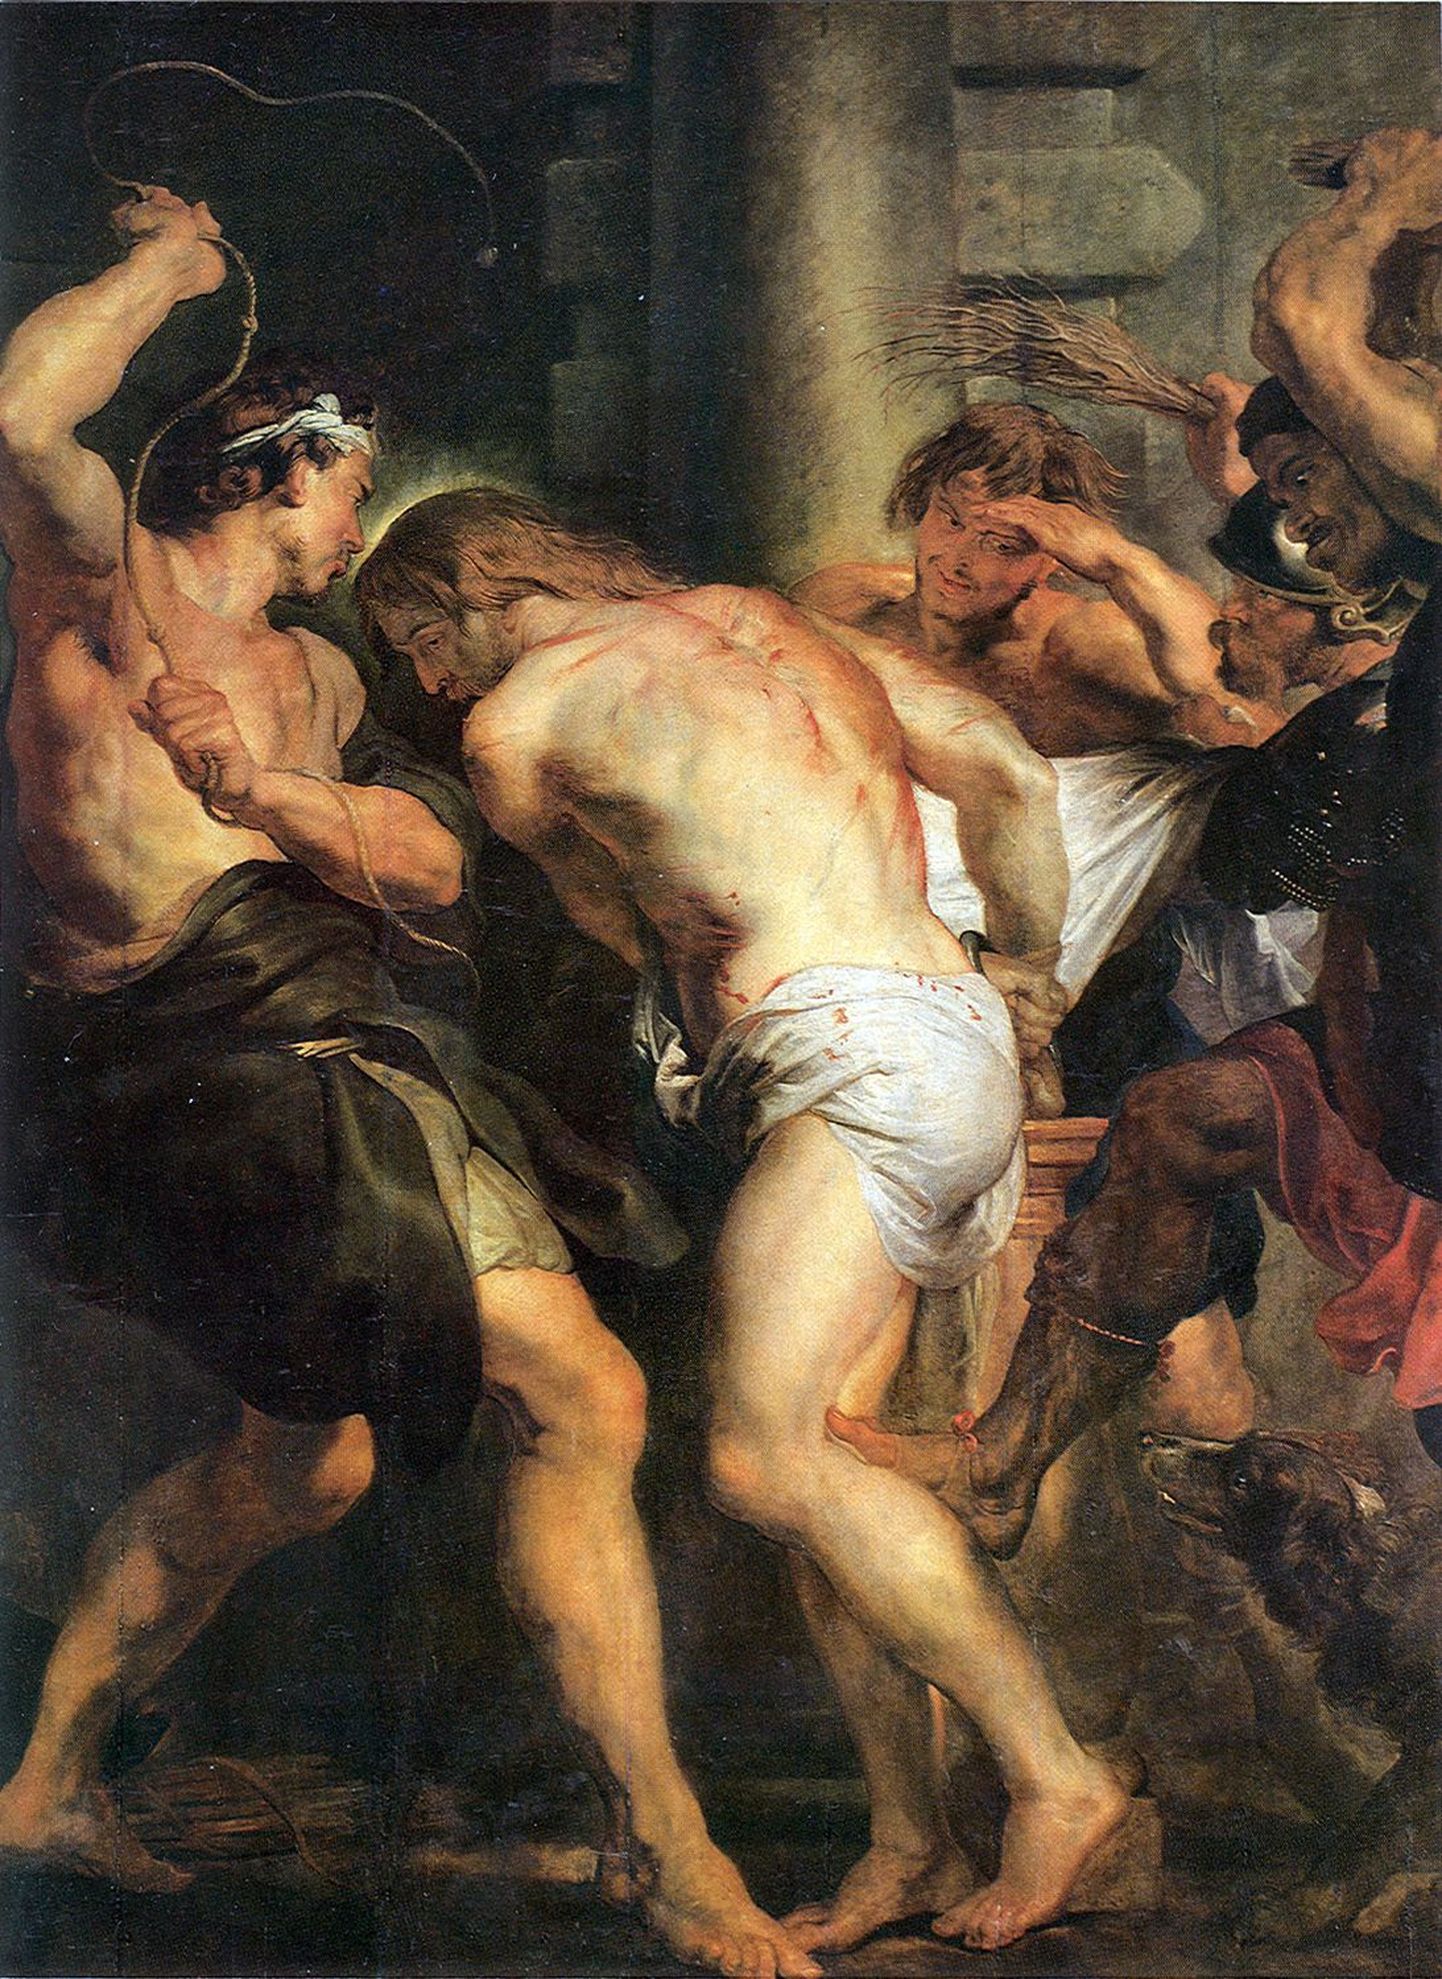 Seda Rubensi maali "Kristuse piitsutamine" varastel kaasa võtta ei õnnestunud.